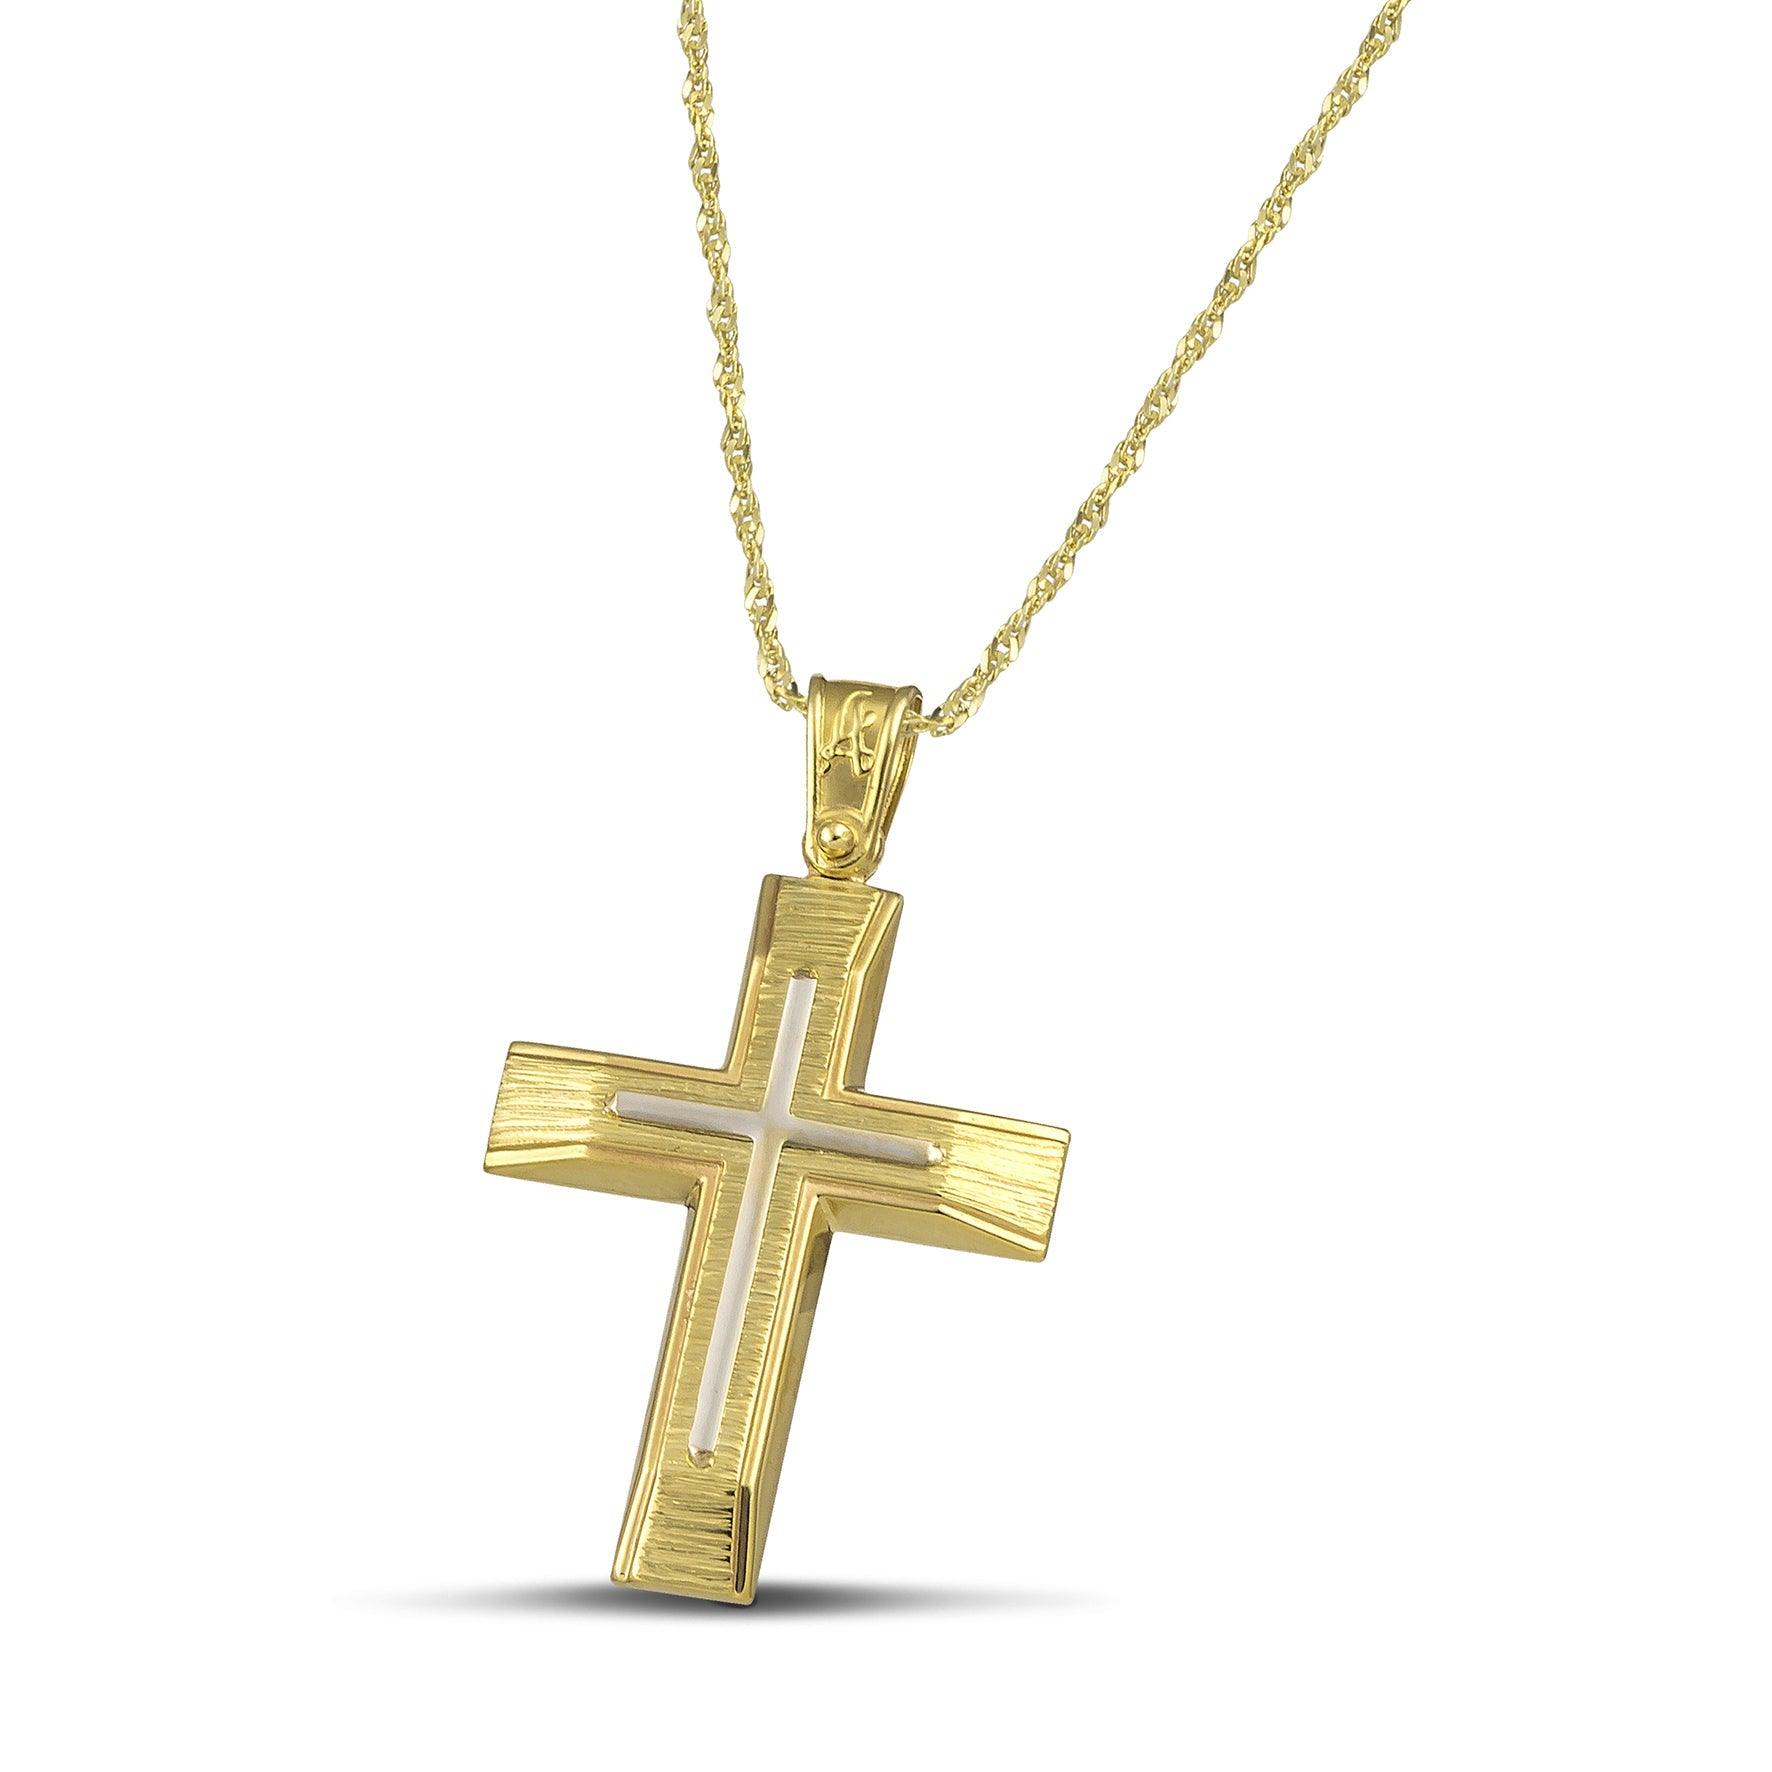 Χρυσός βαφτιστικός σταυρός Κ14 για άντρα με λευκόχρυσο σαγρέ, σε λεπτή, στριφτή αλυσίδα.